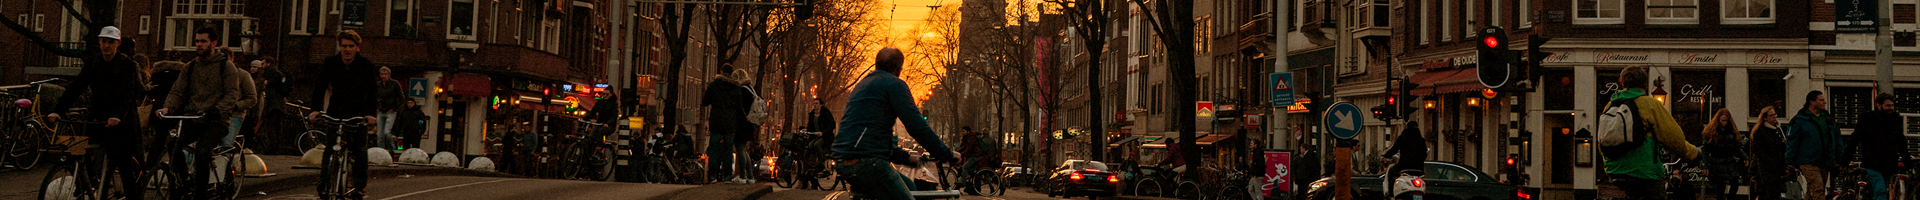 een fietser steekt een trambaan over in een stad met zonsondergang